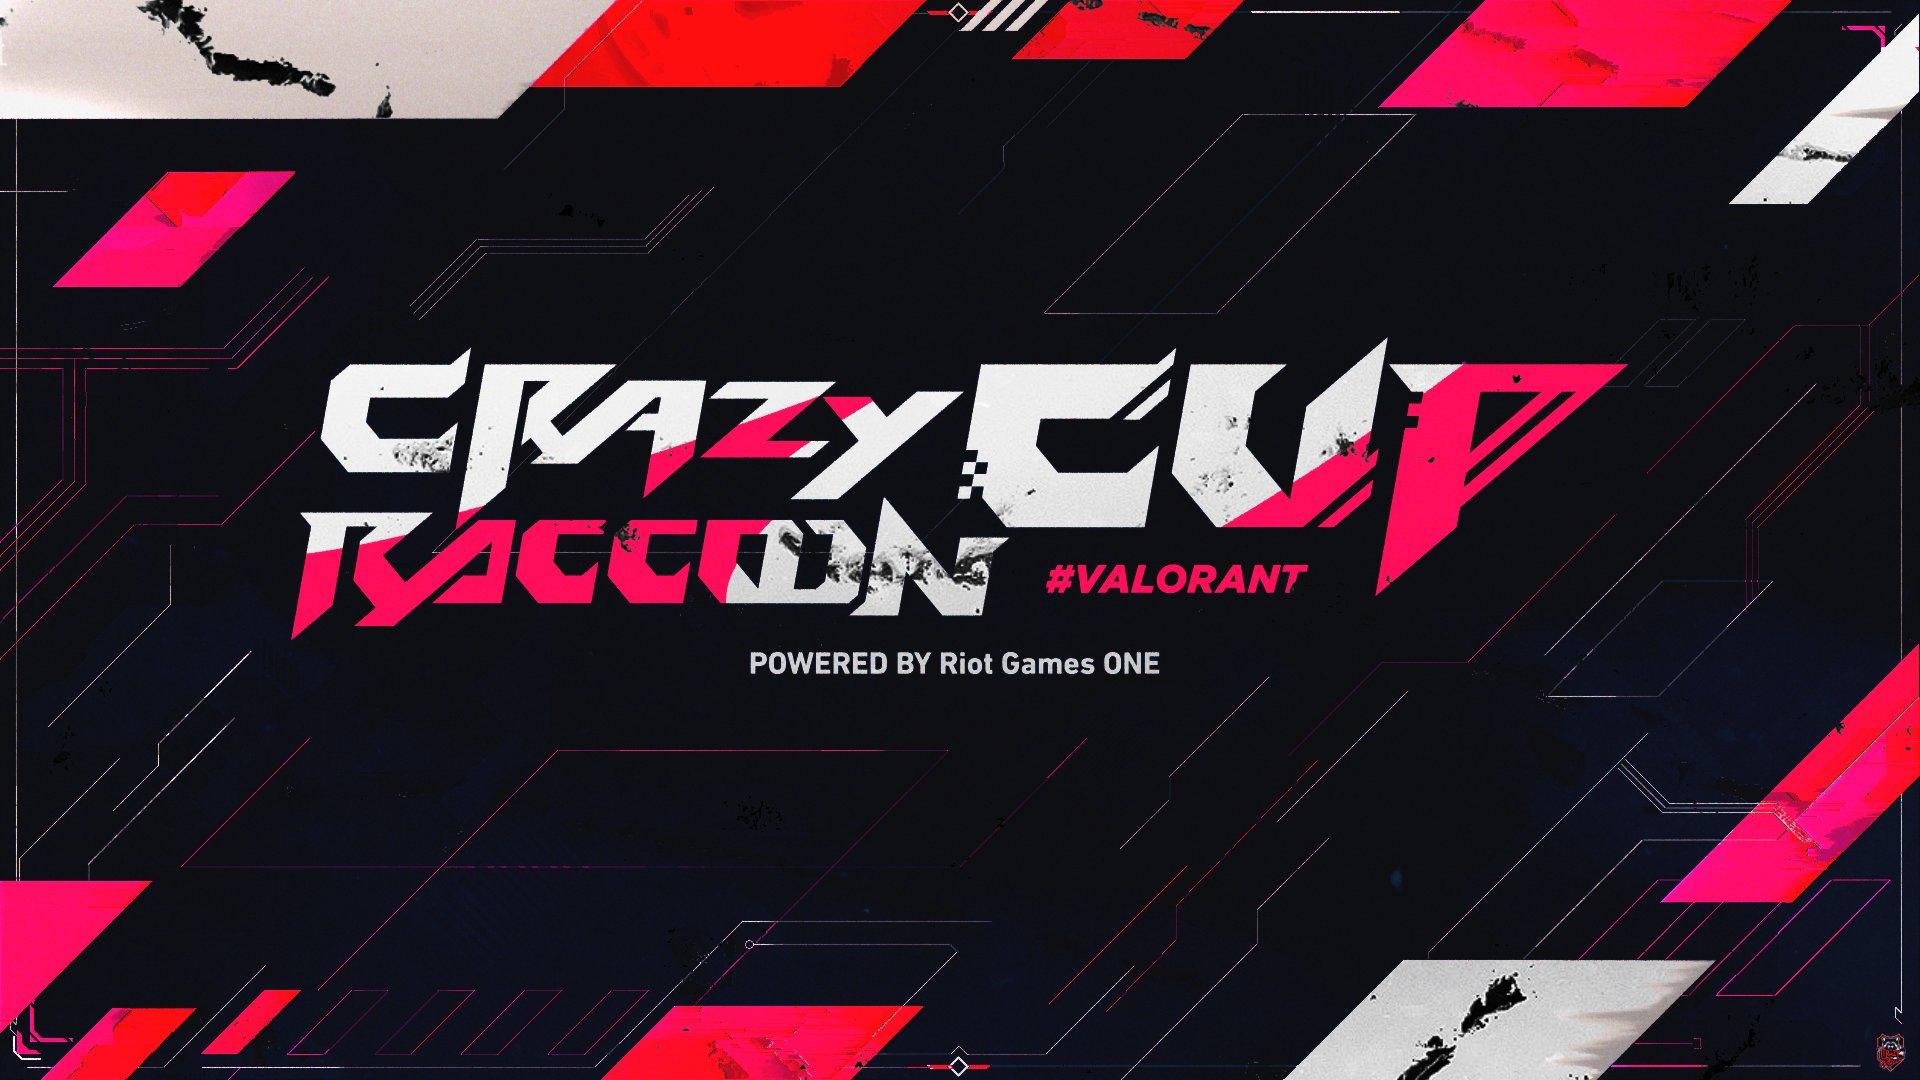 第4回 Crazy Raccoon Cup VALORANT powered by Riot Games ONE feature image